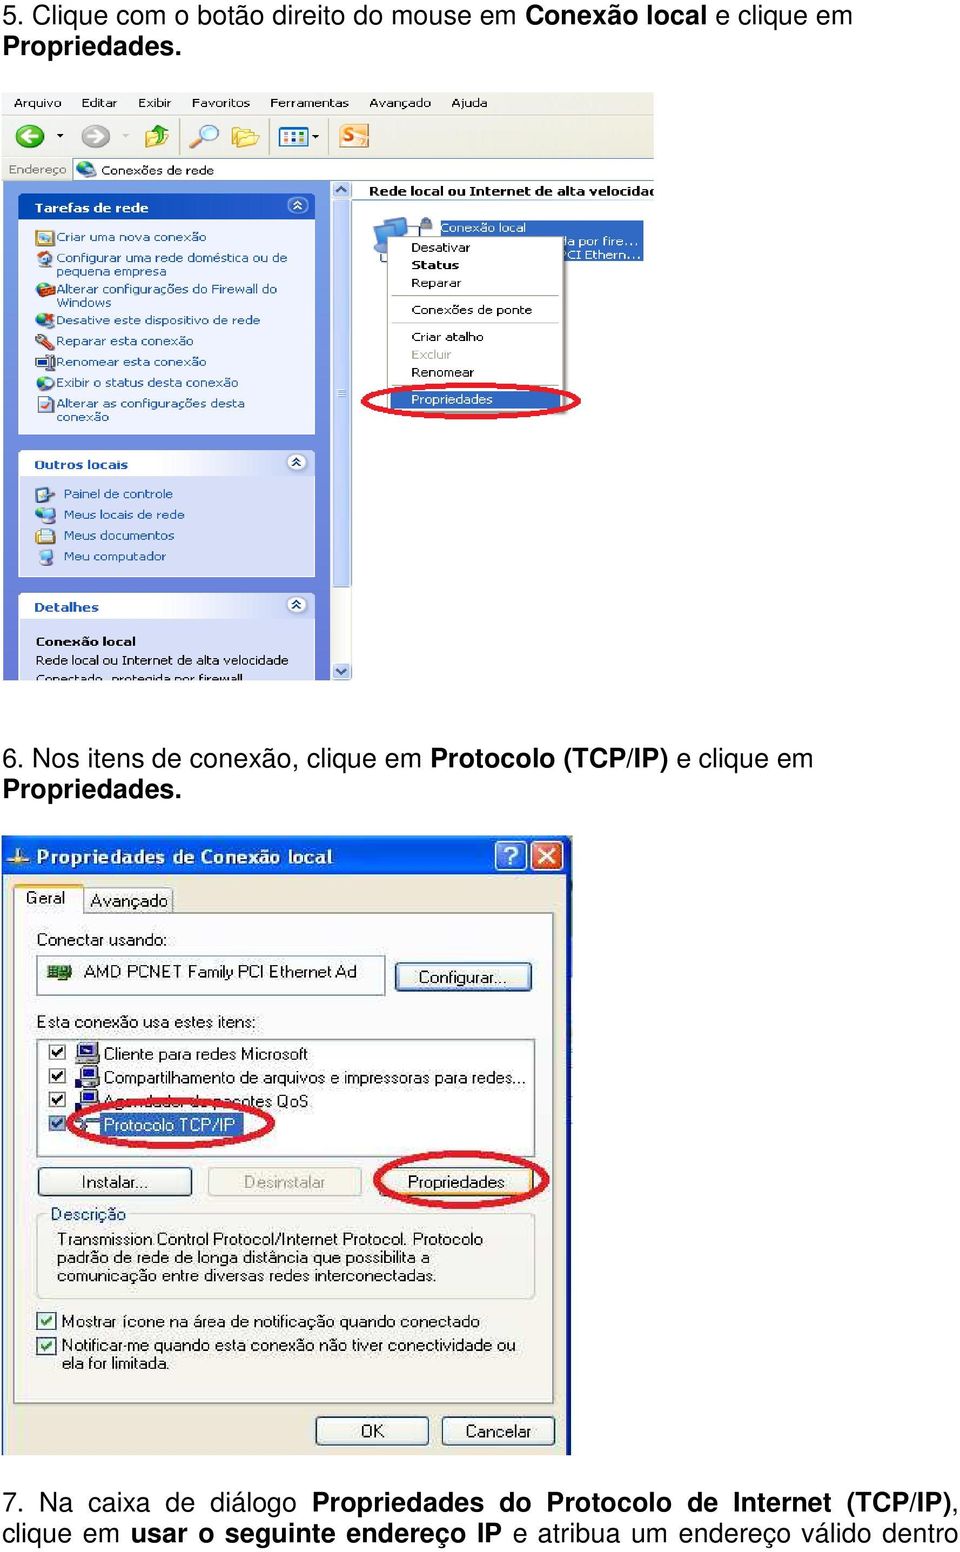 Nos itens de conexão, clique em Protocolo (TCP/IP) e clique em Propriedades.